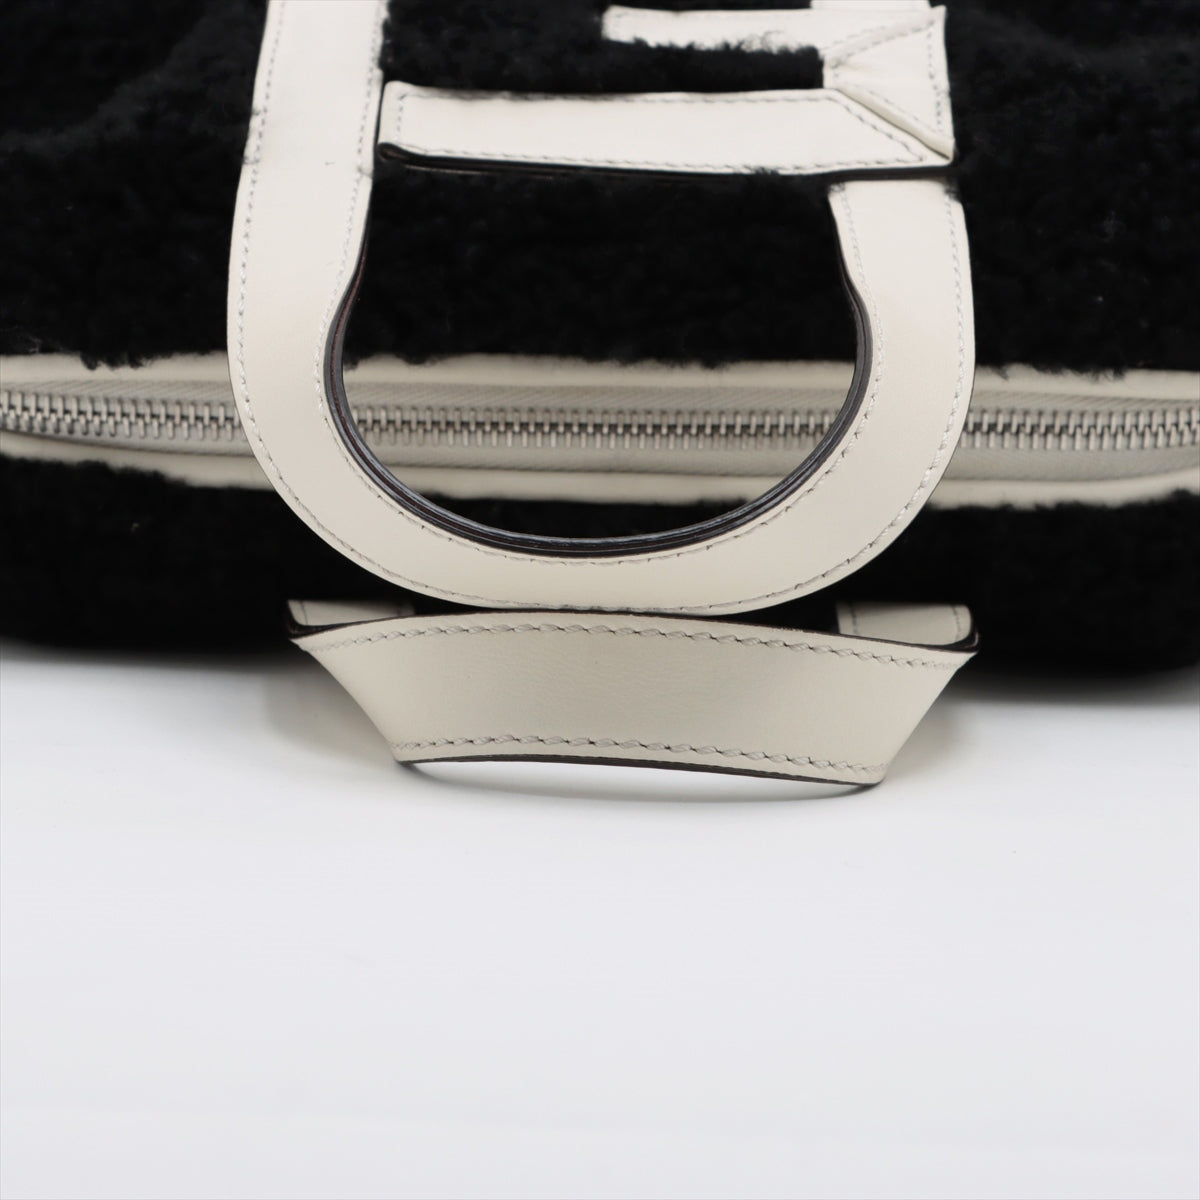 Fendi ZUCCa Mini bag 2way handbag Black × White 7VA570